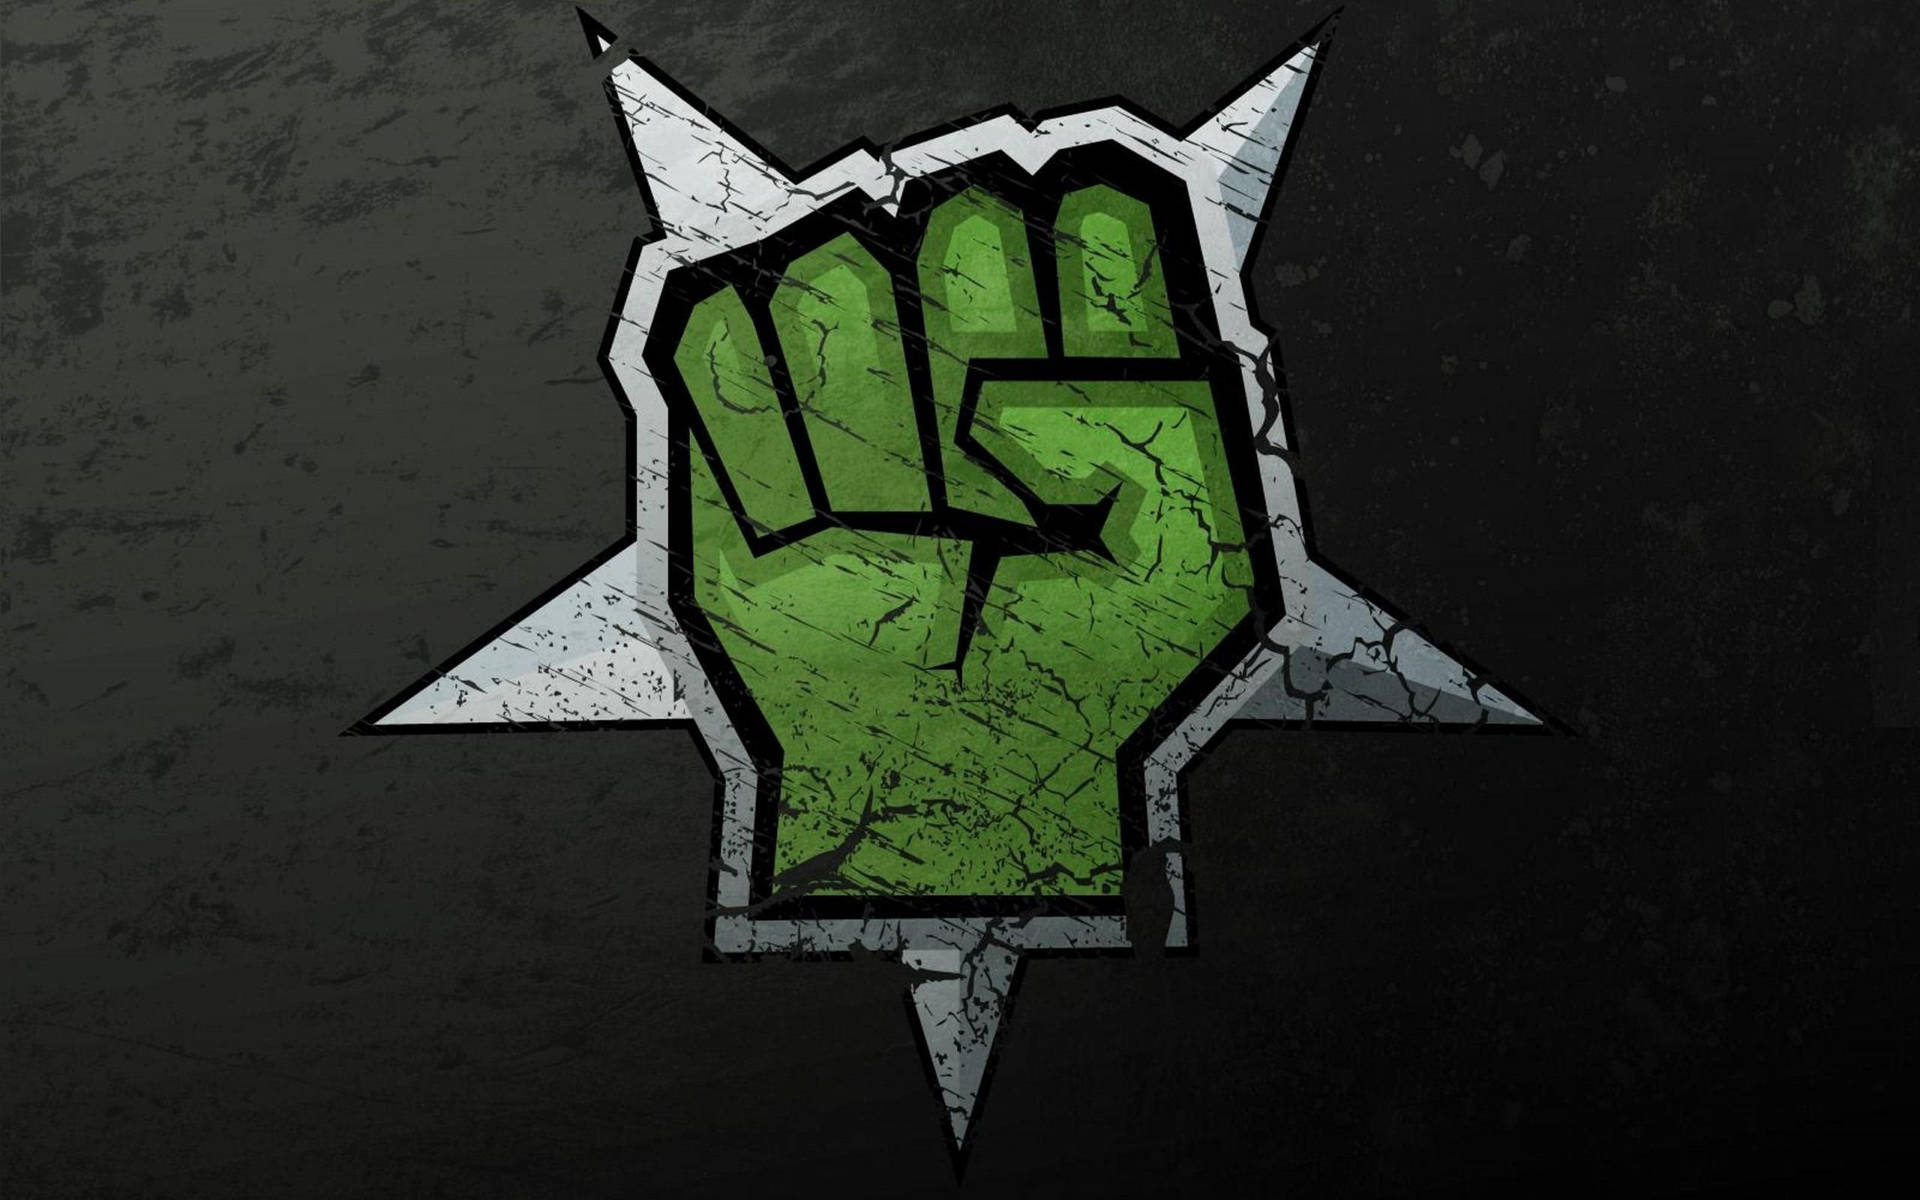 Wallpaper of green fist graffiti artwork centered on a white star.